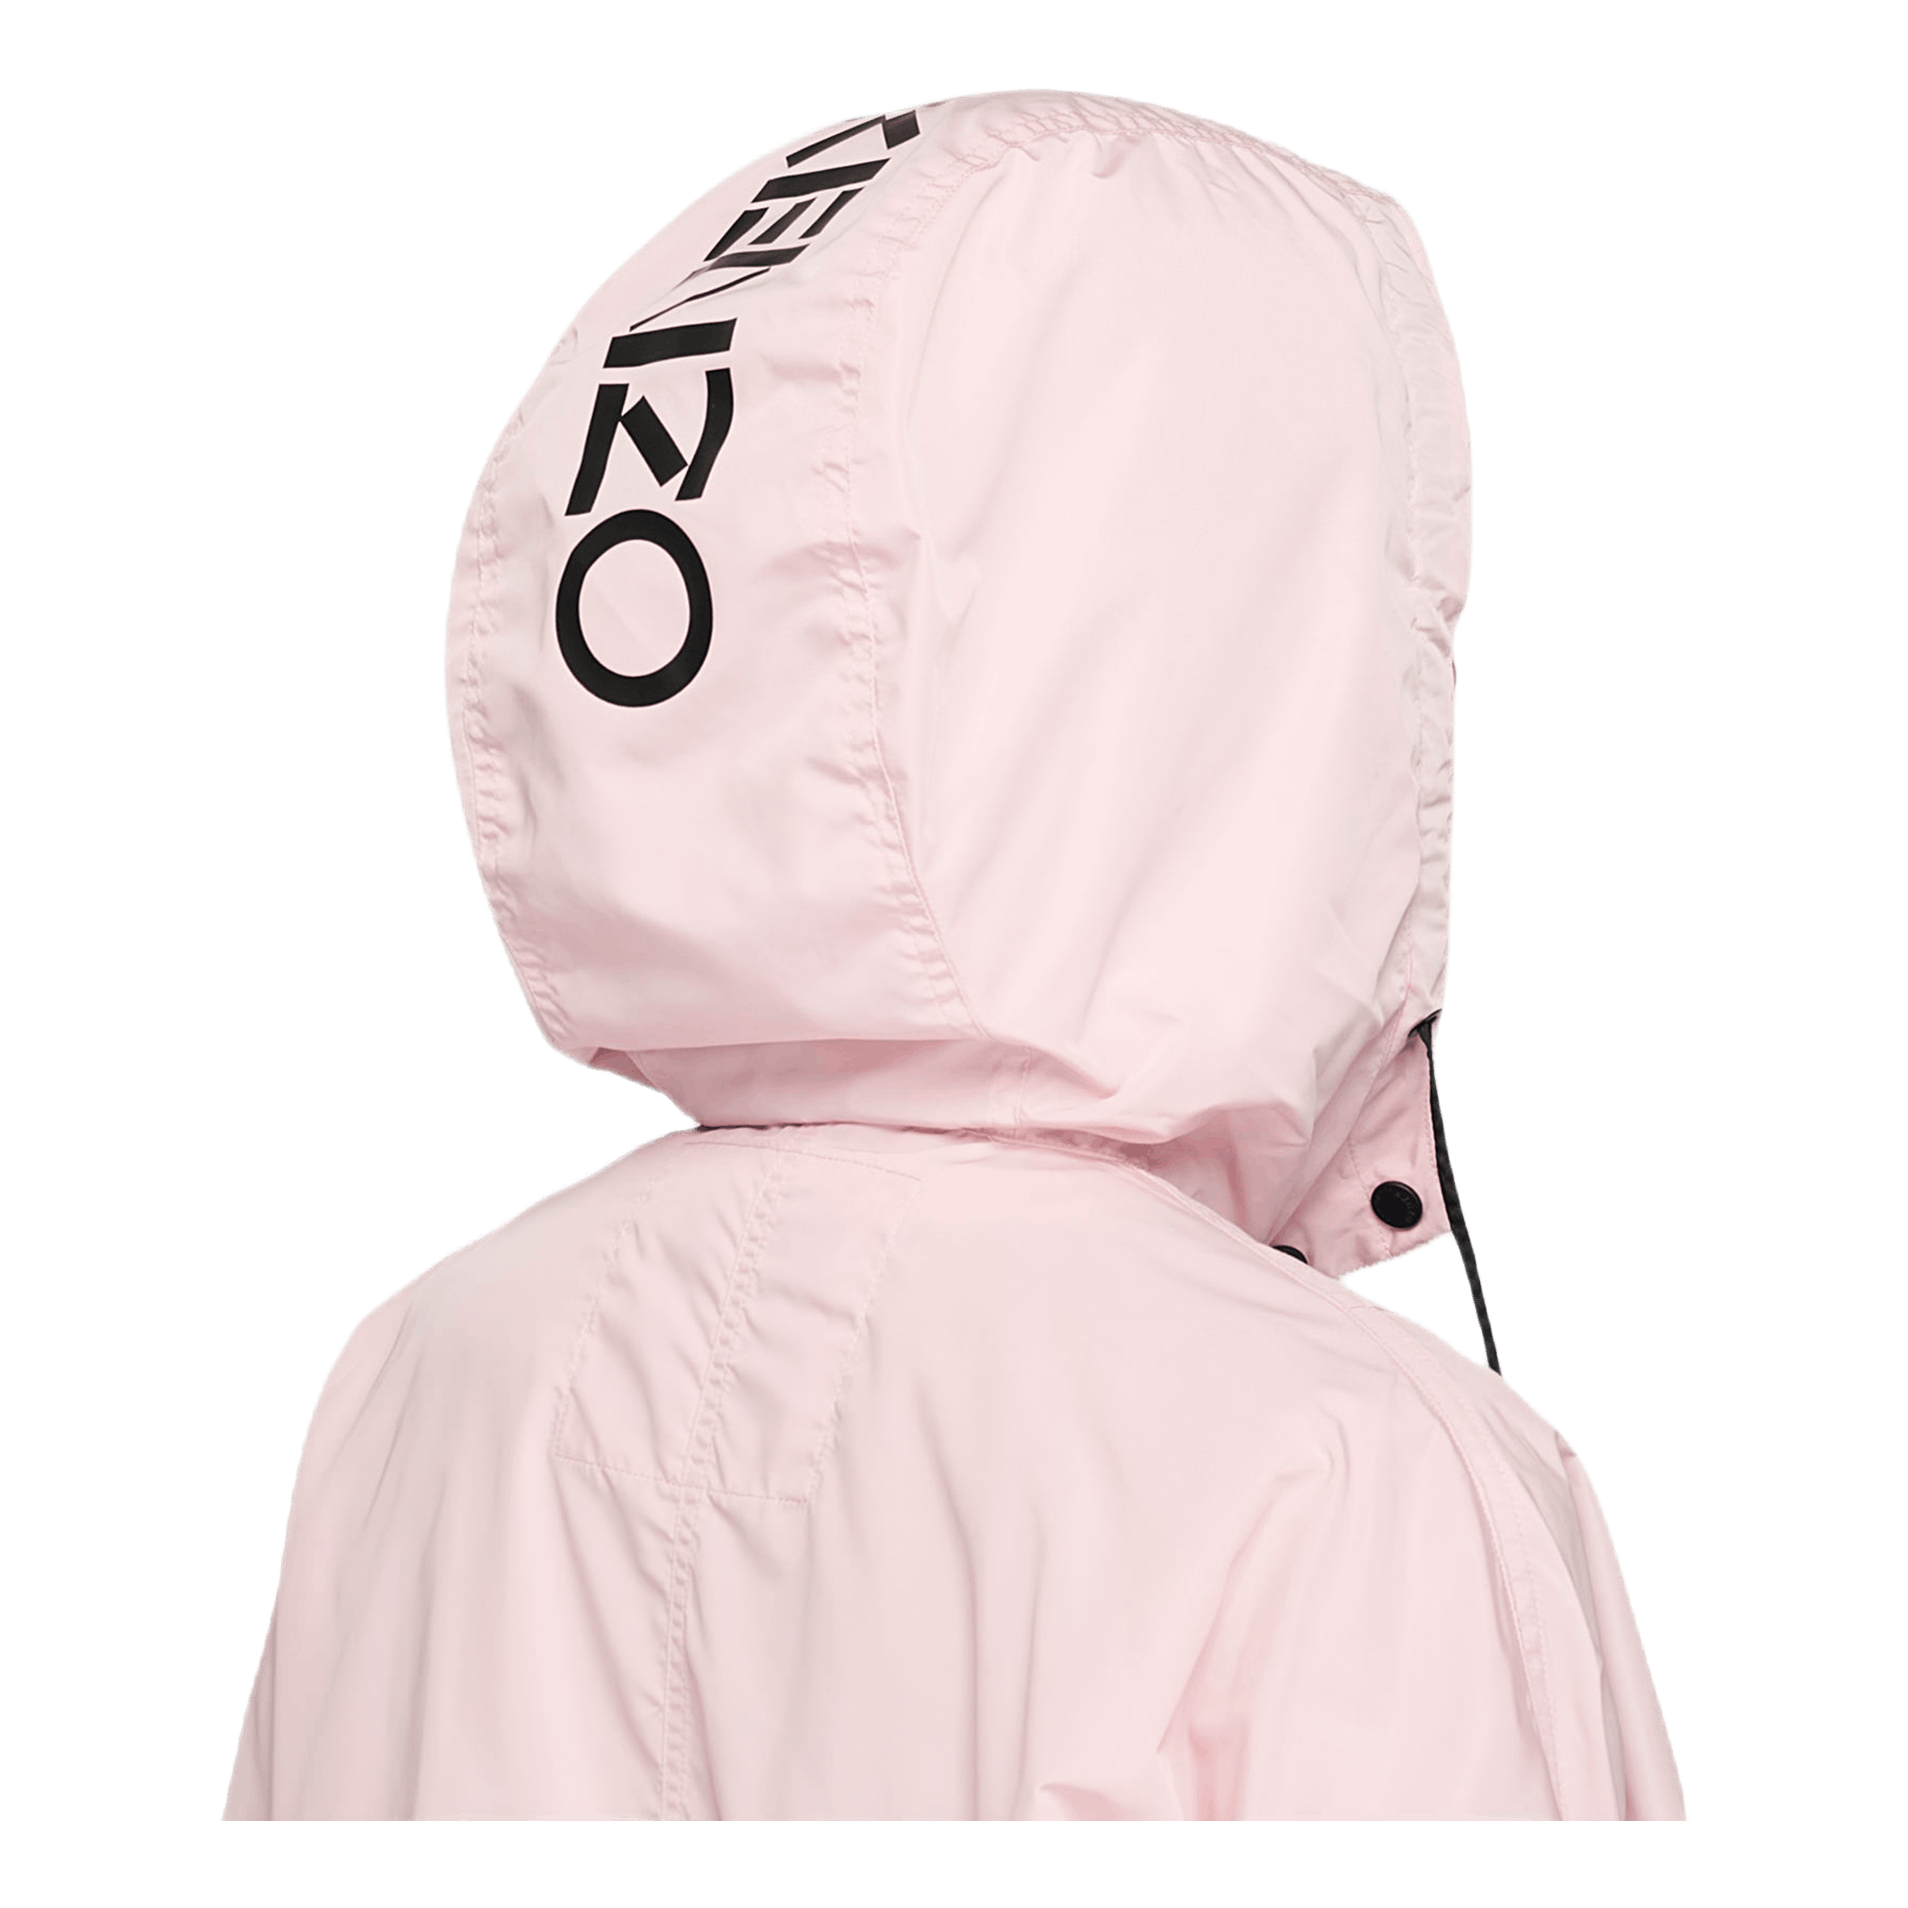 Kenzo Logo Windbreaker Pink